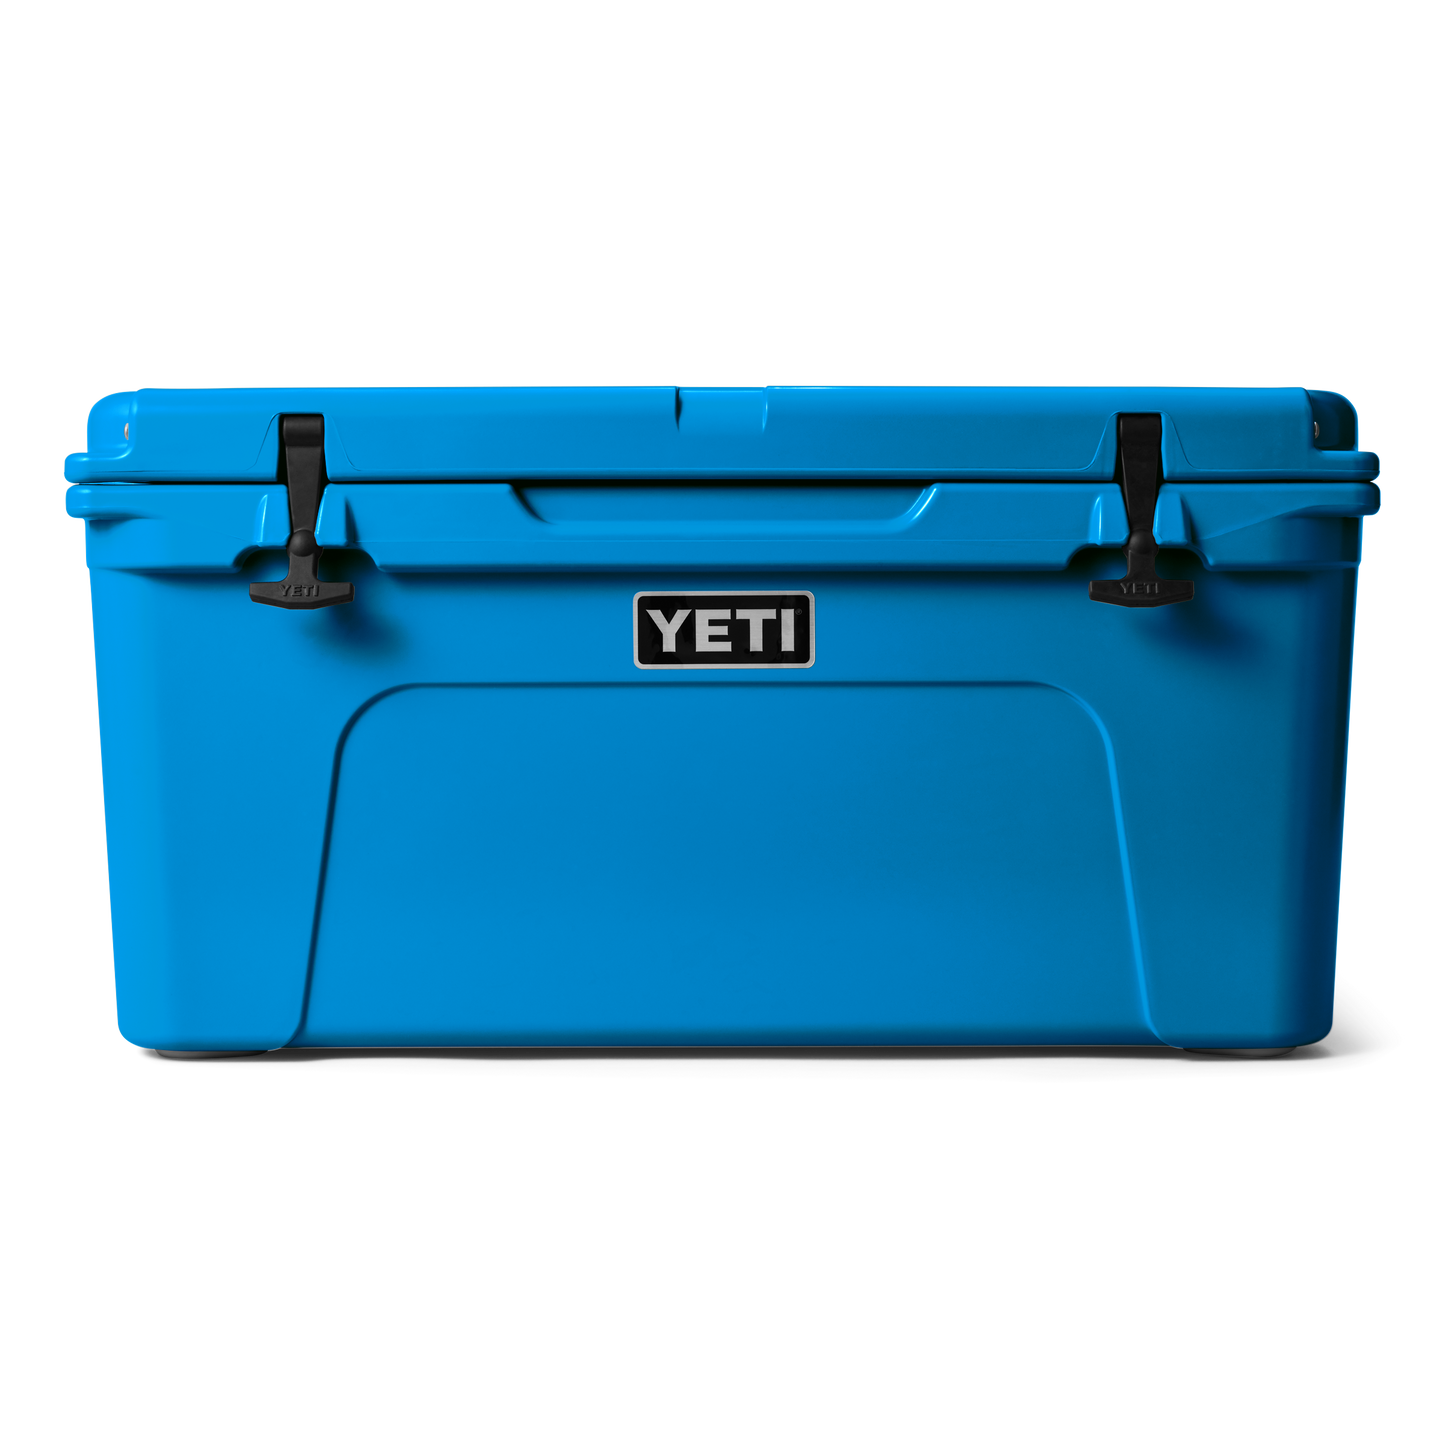 YETI Tundra® 65 Cool Box Big Wave Blue